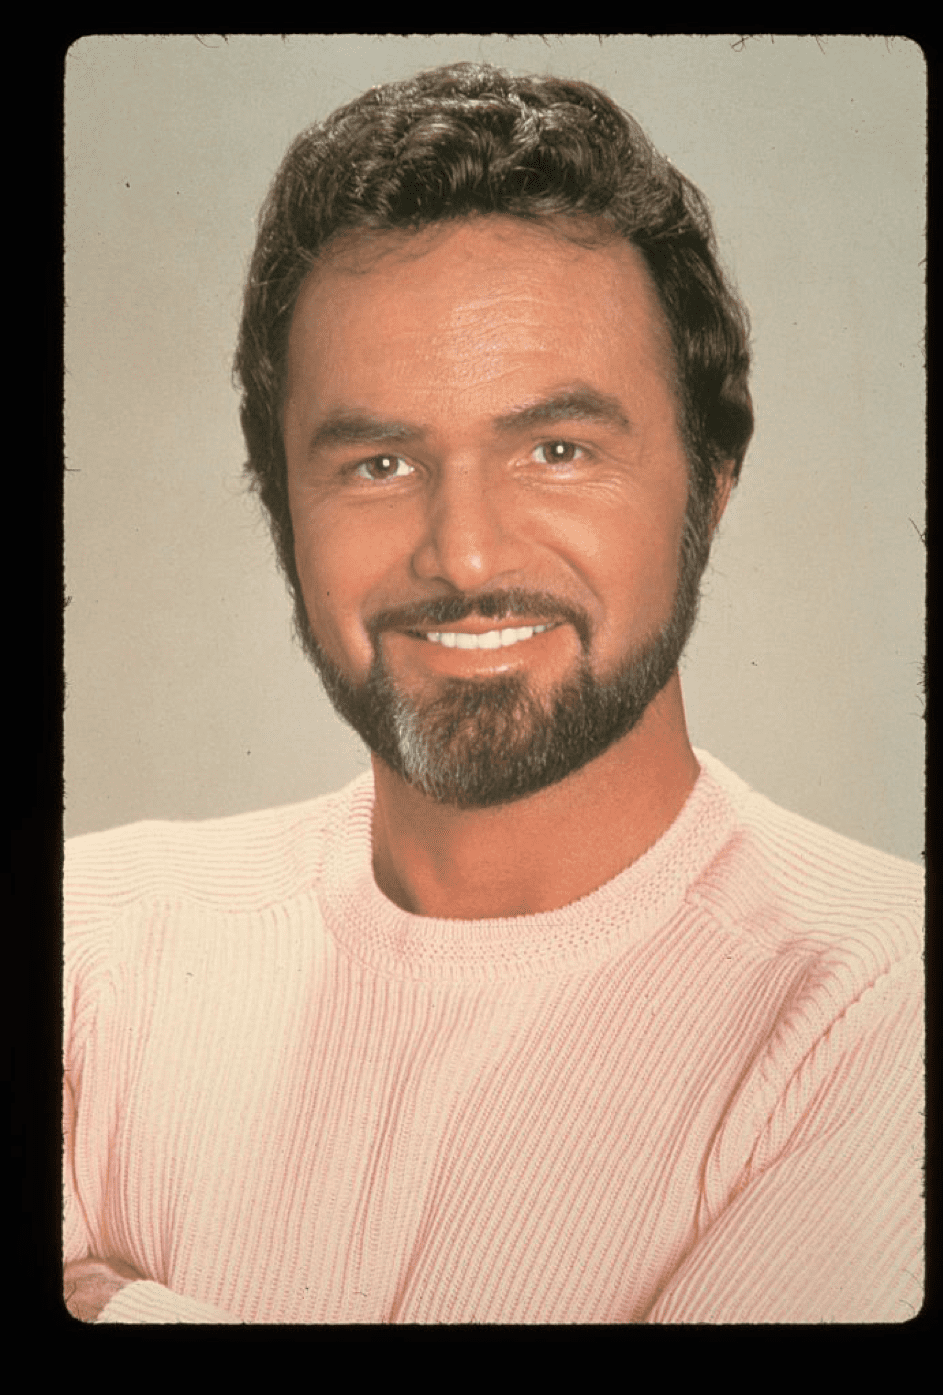 Portrait von Burt Reynolds am 22.12.17 in Amsterdam. | Quelle: Getty Images